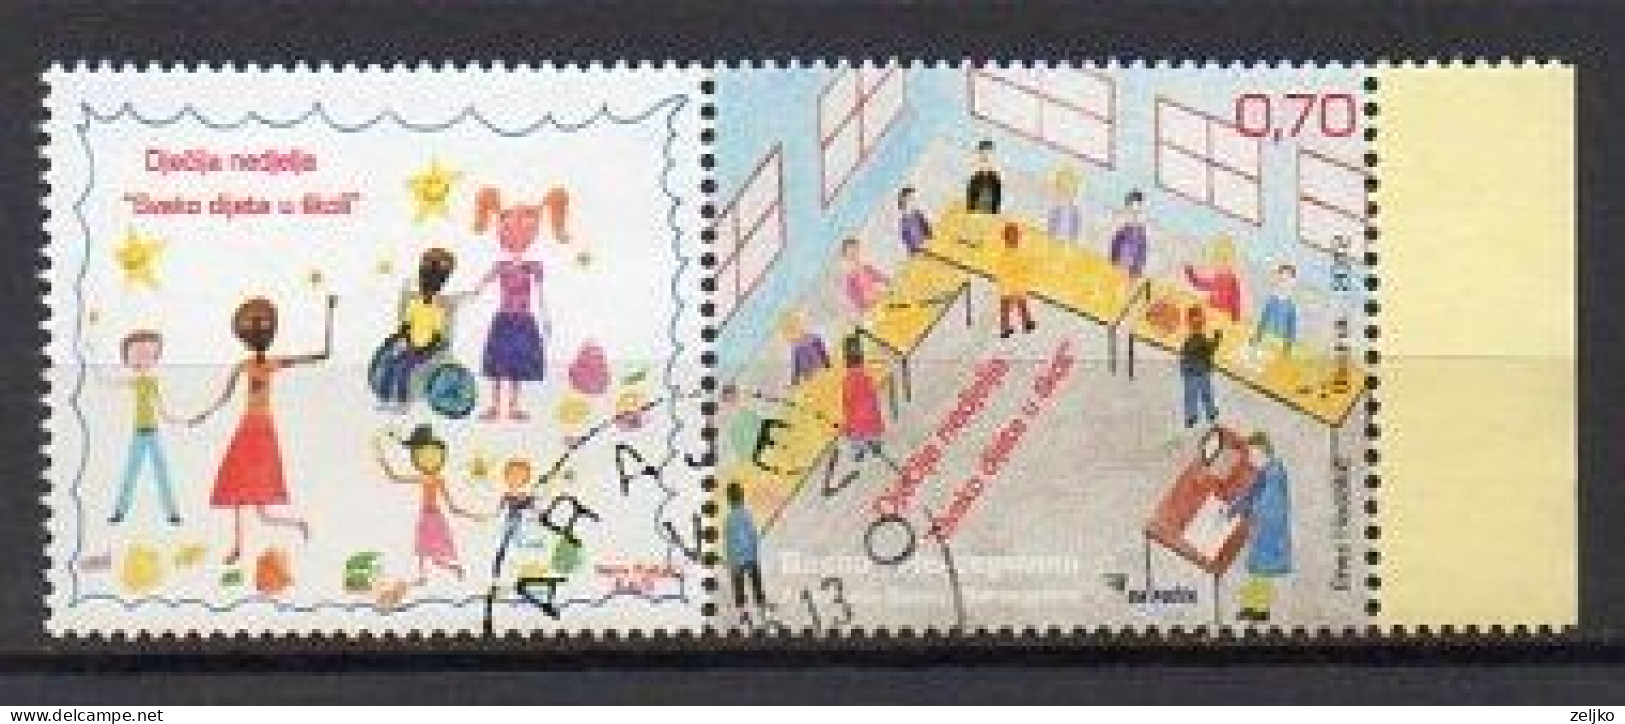 Bosnia And Herzegovina, Sarajevo 2012, Used, Michel 608 Stamp + Vignette, Children - Bosnia And Herzegovina